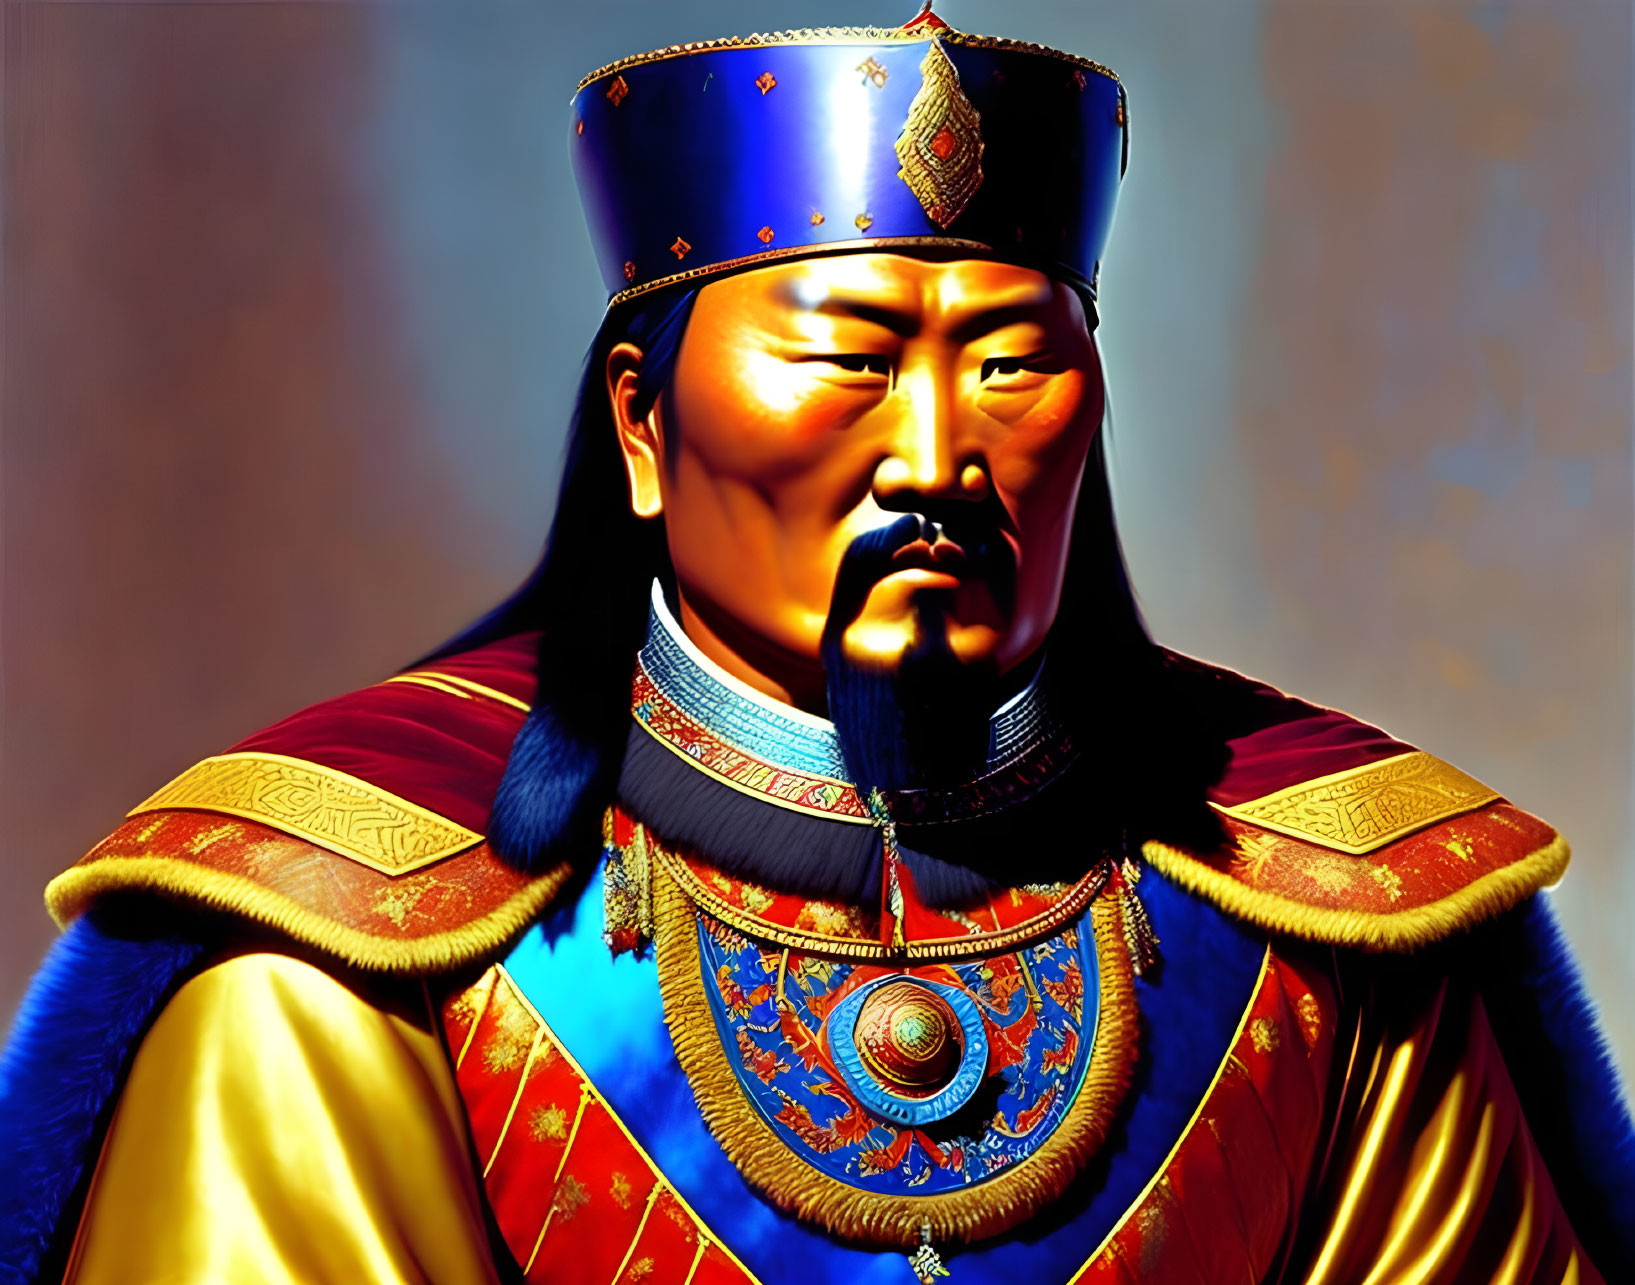 Genghis Khan, Temujin or Temujin